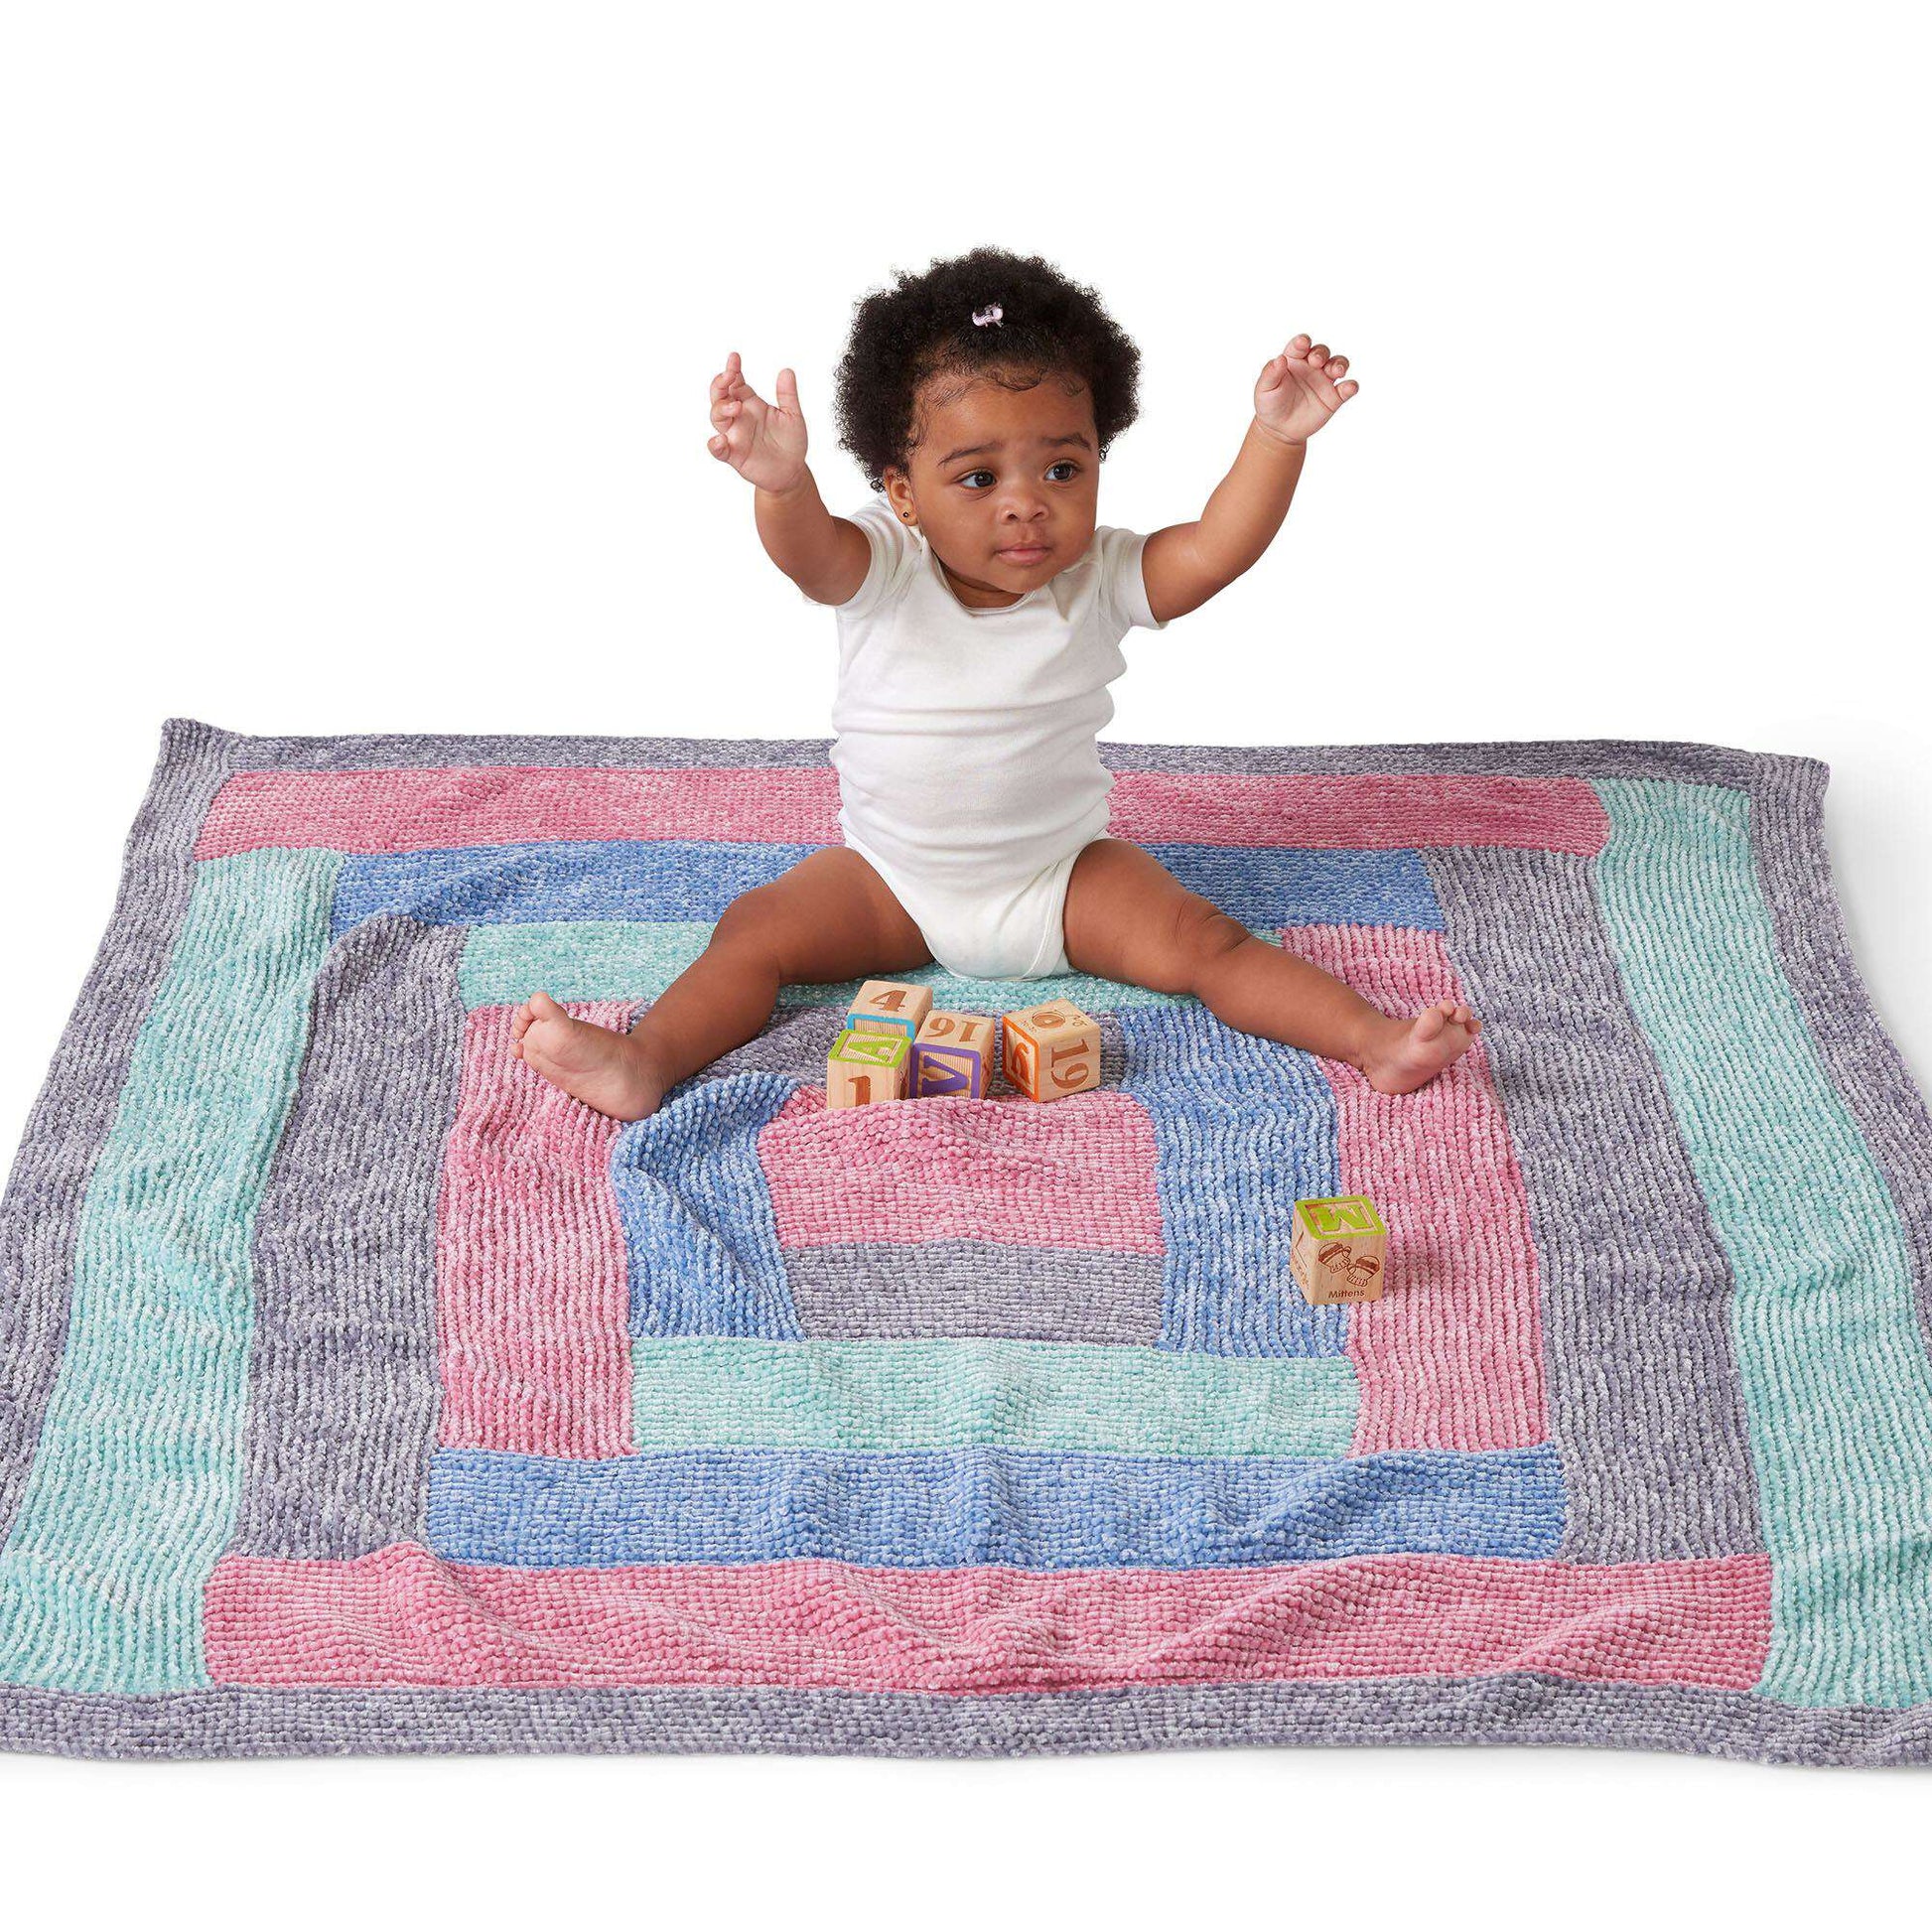 Free Bernat Luxe Knit Log Cabin Baby Blanket Pattern